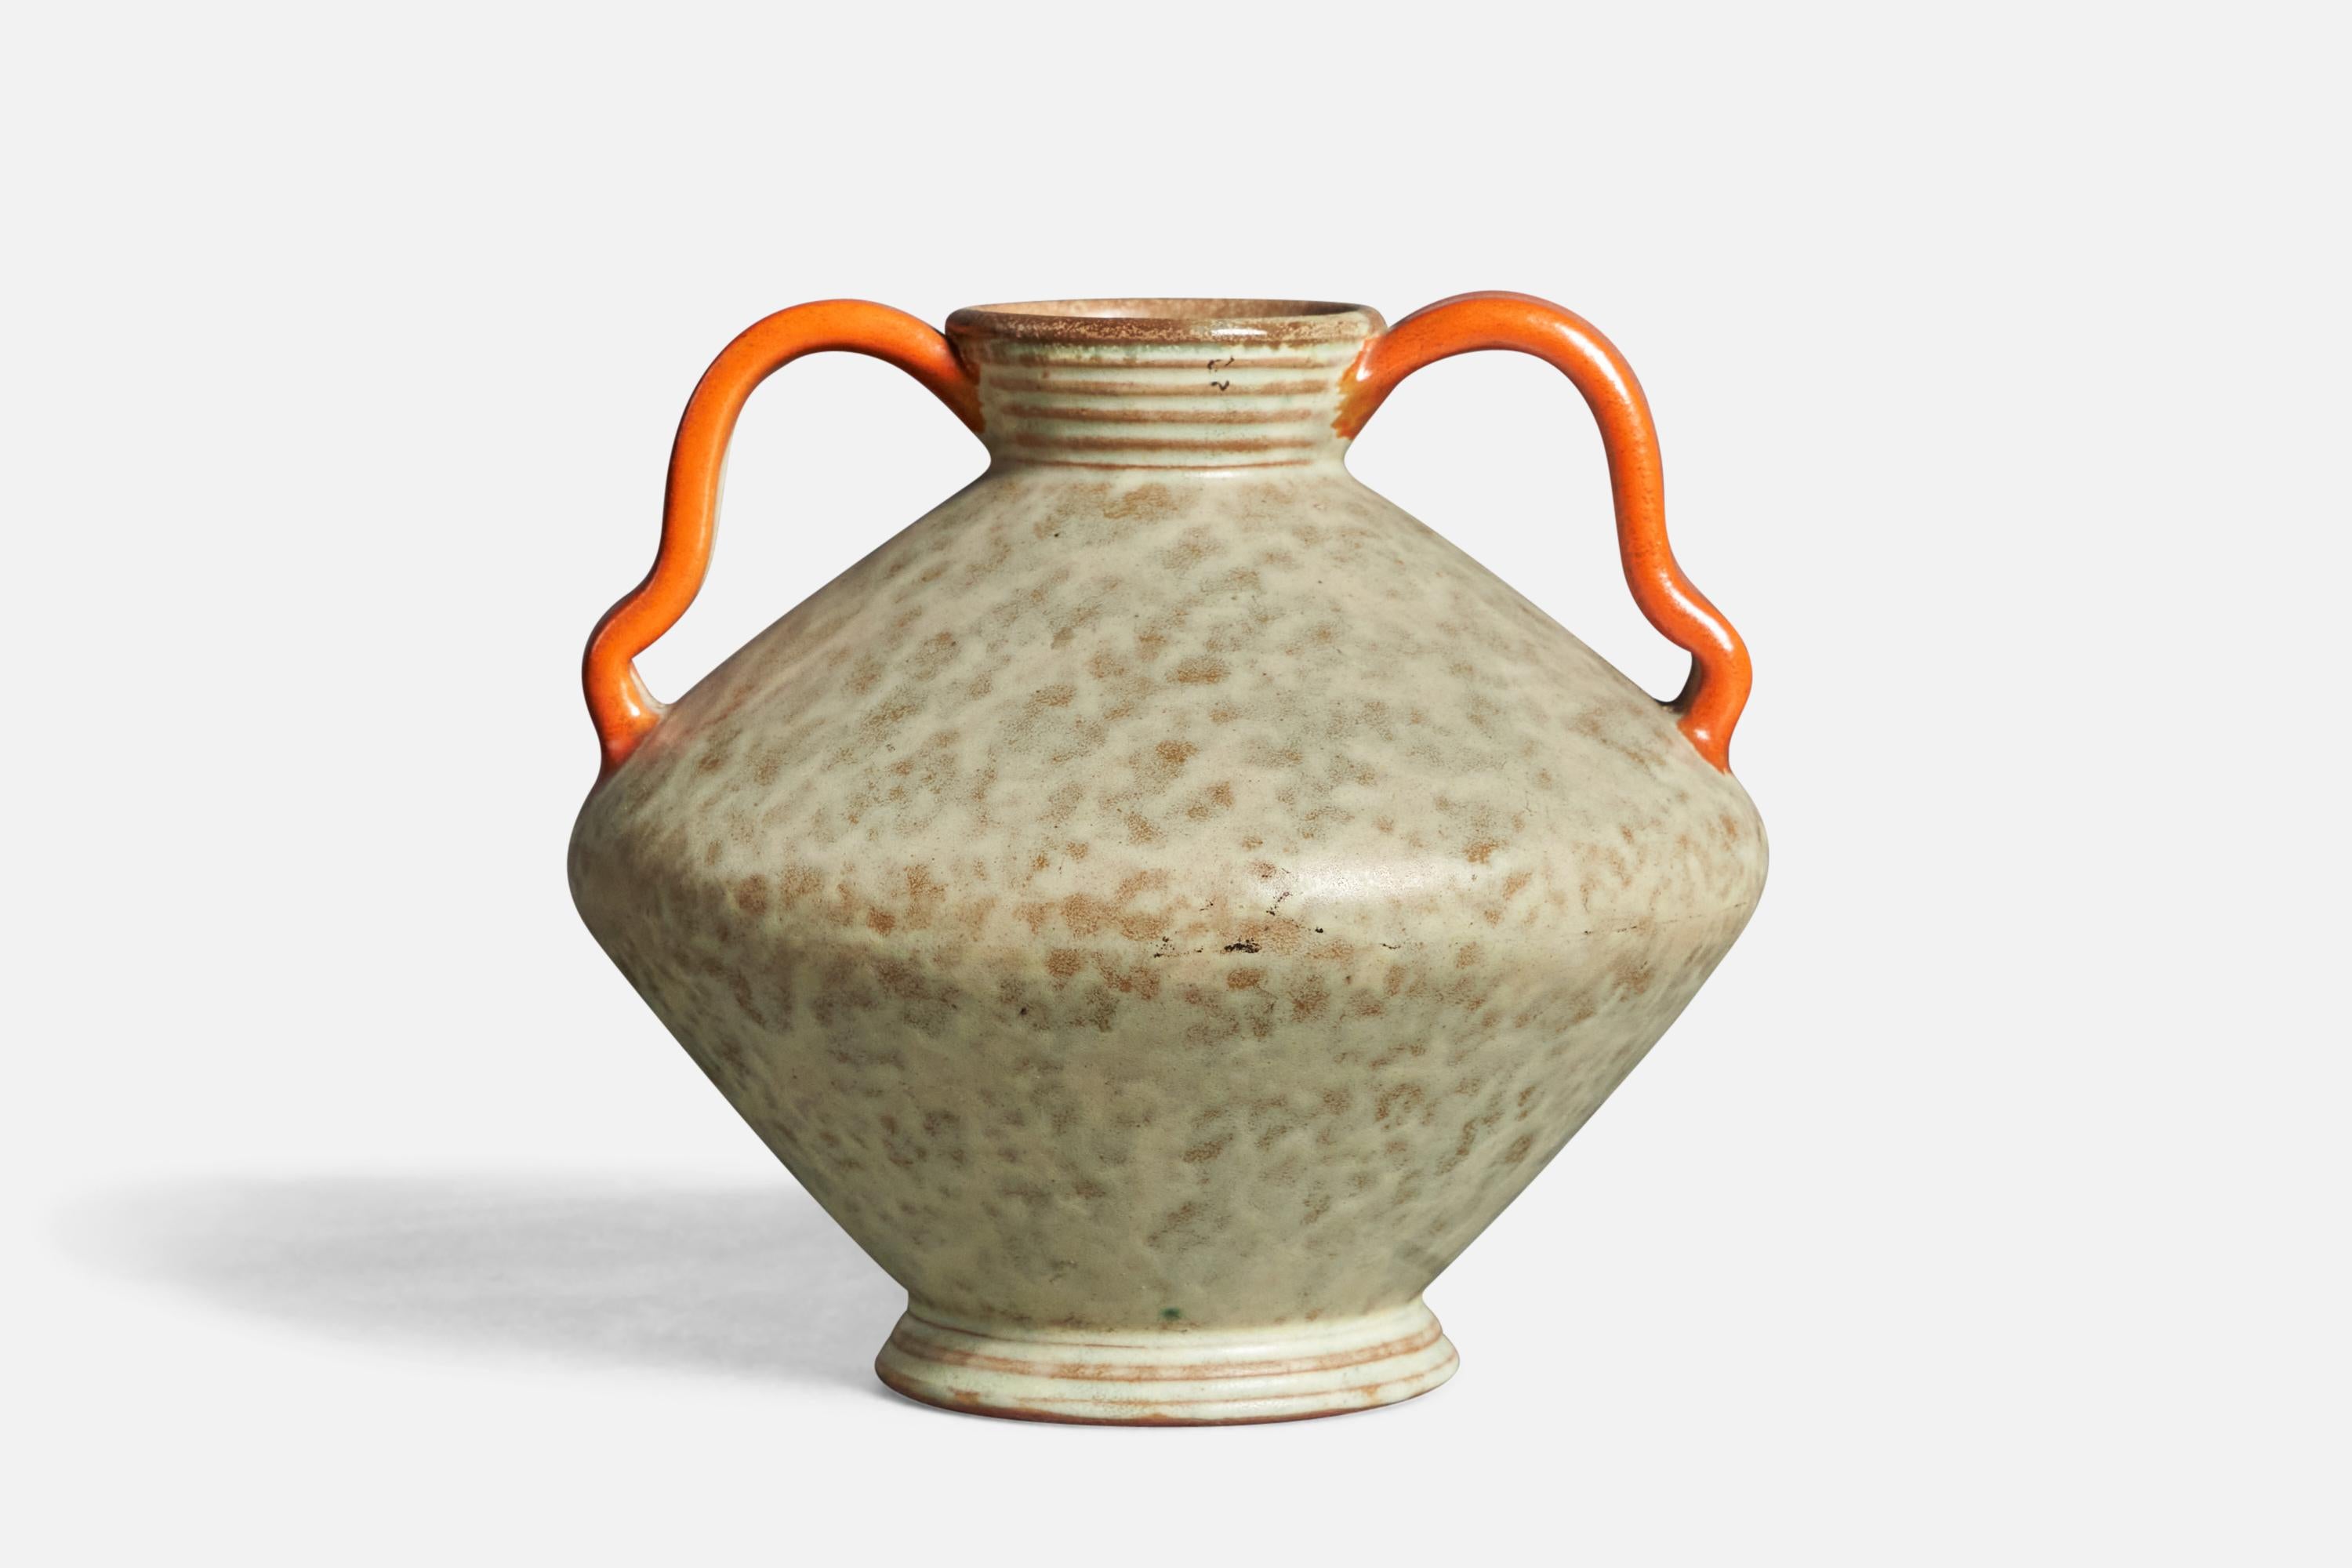 A beige and orange-glazed earthenware vase, designed and produced by Töreboda Keramik, Sweden, 1930s.